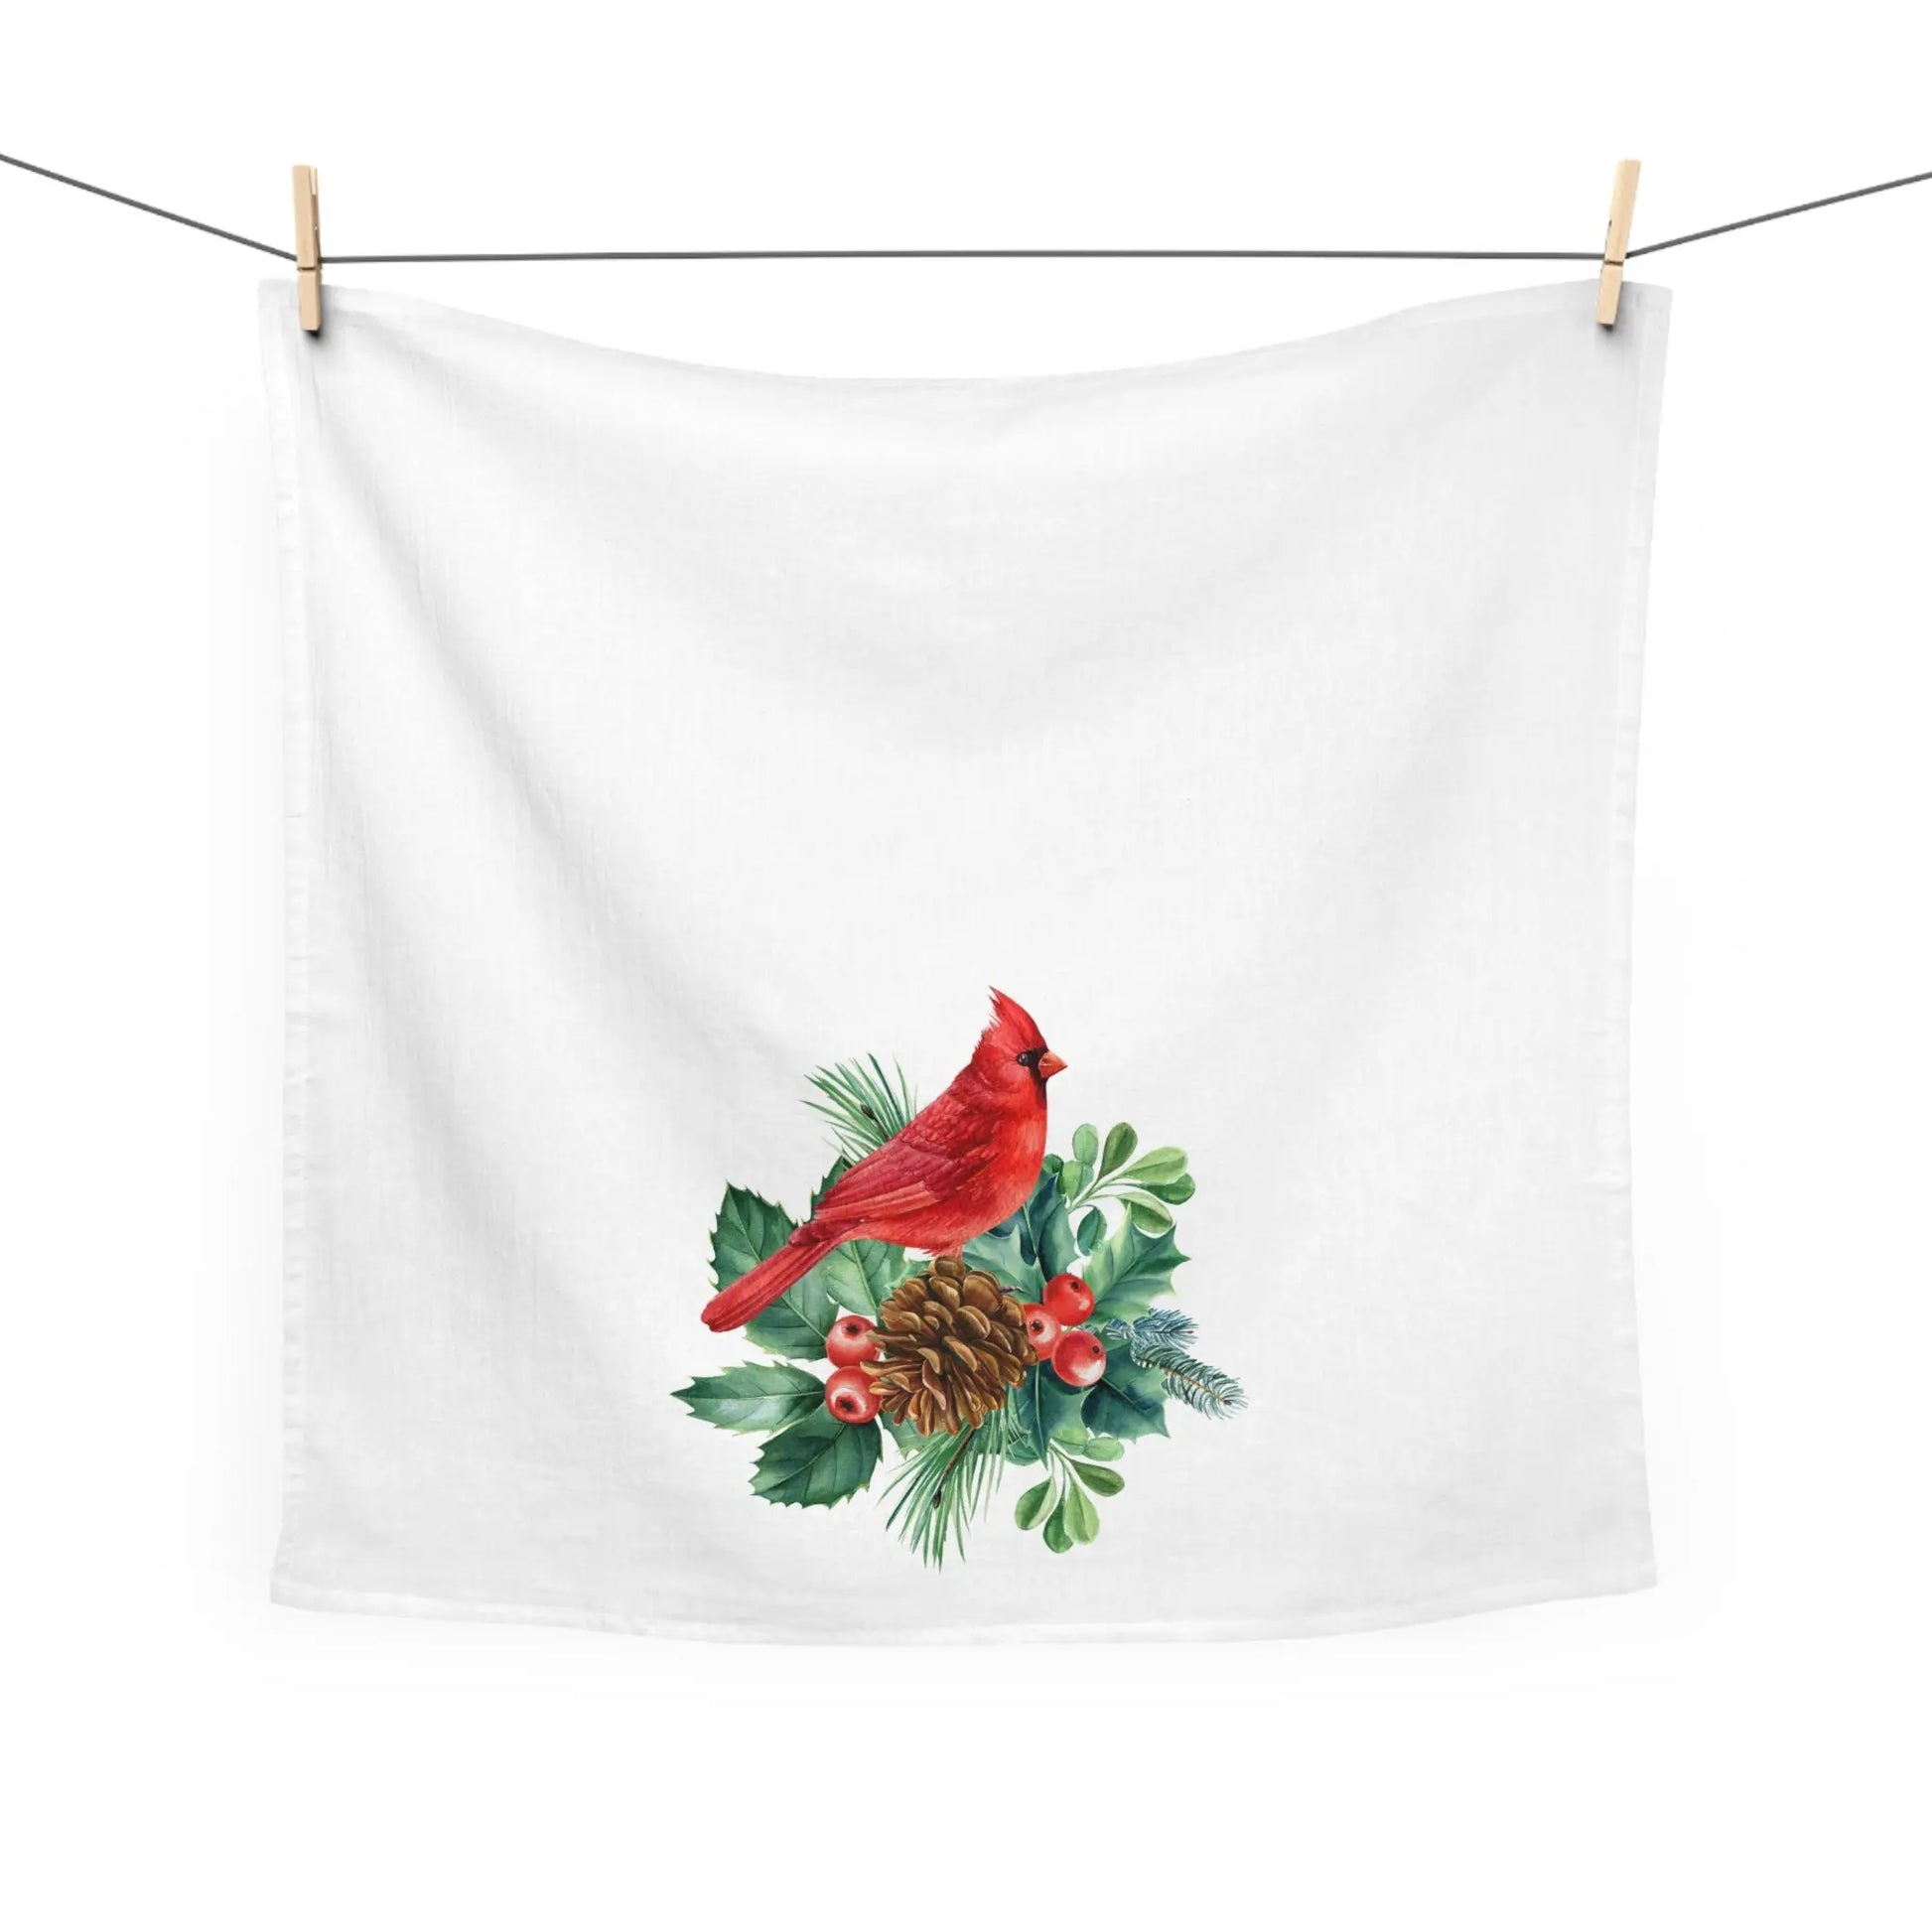 Cardinal Kitchen Tea Towel, Holiday Kitchen Towel, Christmas Dish Towel, Winter Cardinal Towel Printify